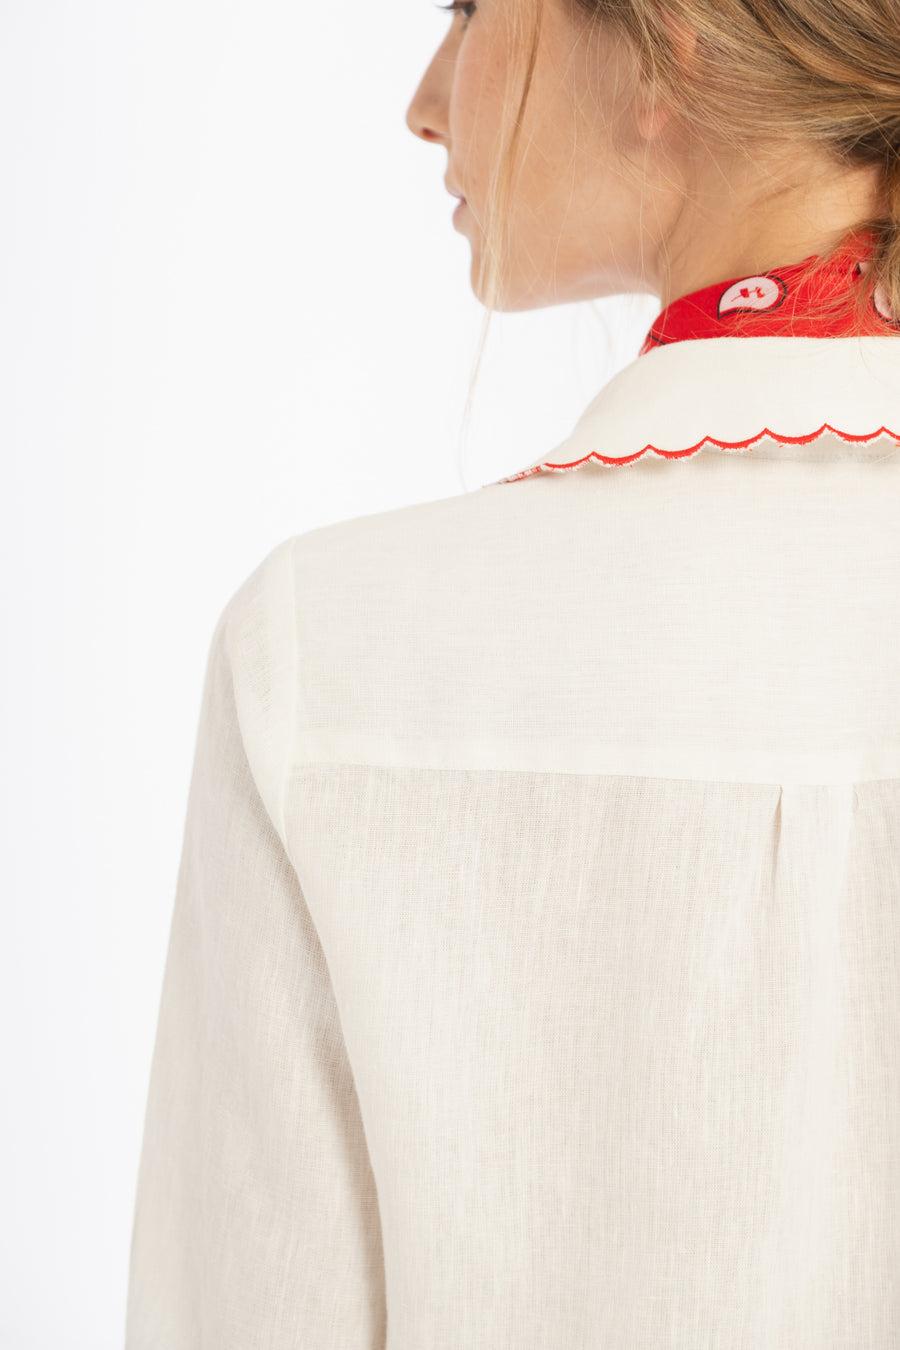 PRE VENTA |  Camisa Don’t Worry en Lino - Blanco con bordados rojos blanco xl